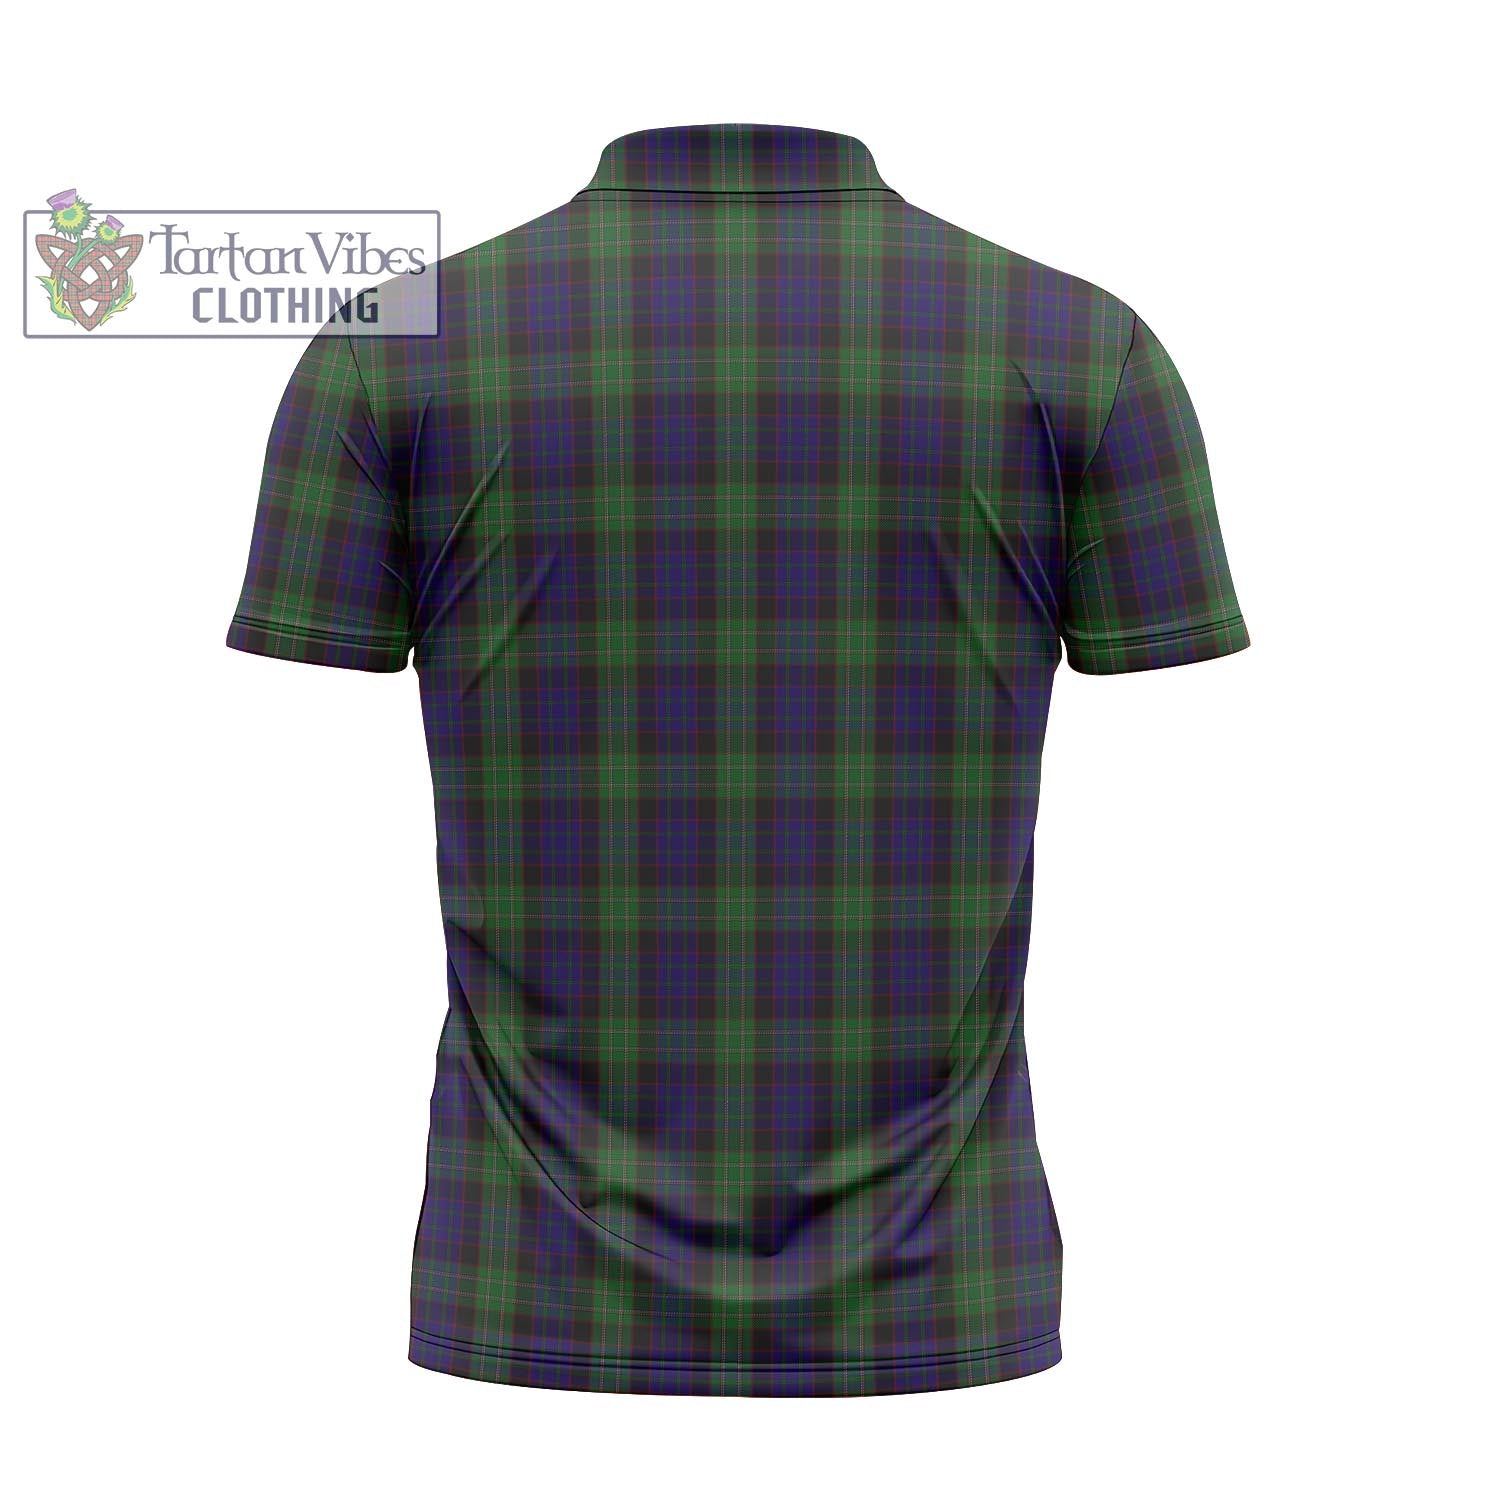 Tartan Vibes Clothing Nicolson Green Hunting Tartan Zipper Polo Shirt